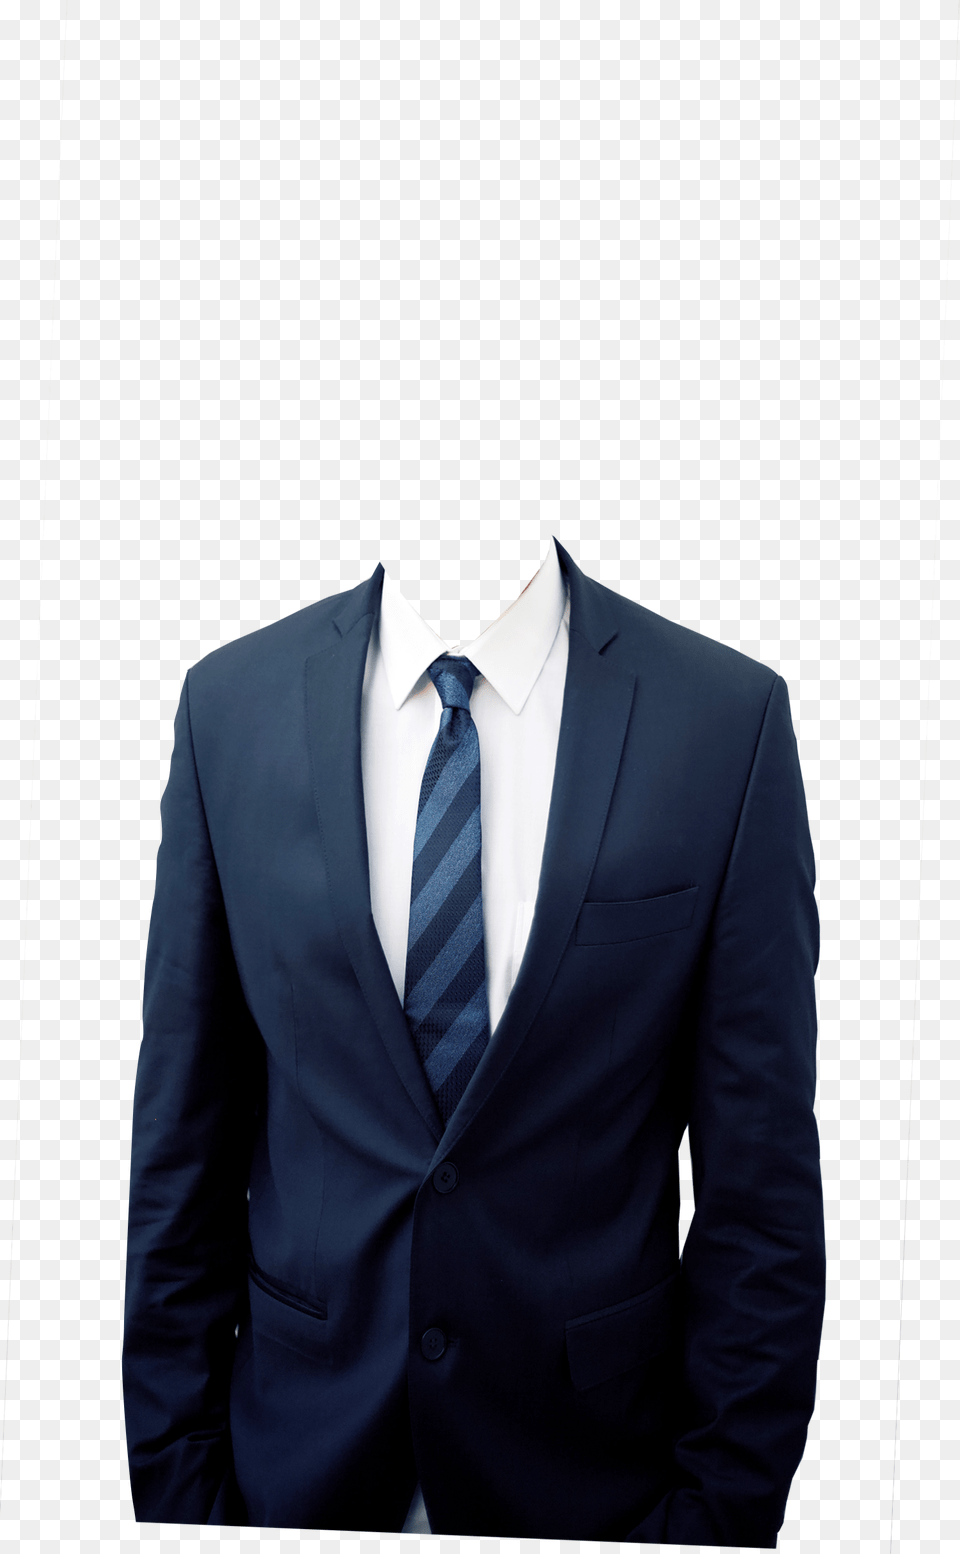 Tuxedo, Accessories, Tie, Suit, Necktie Free Png